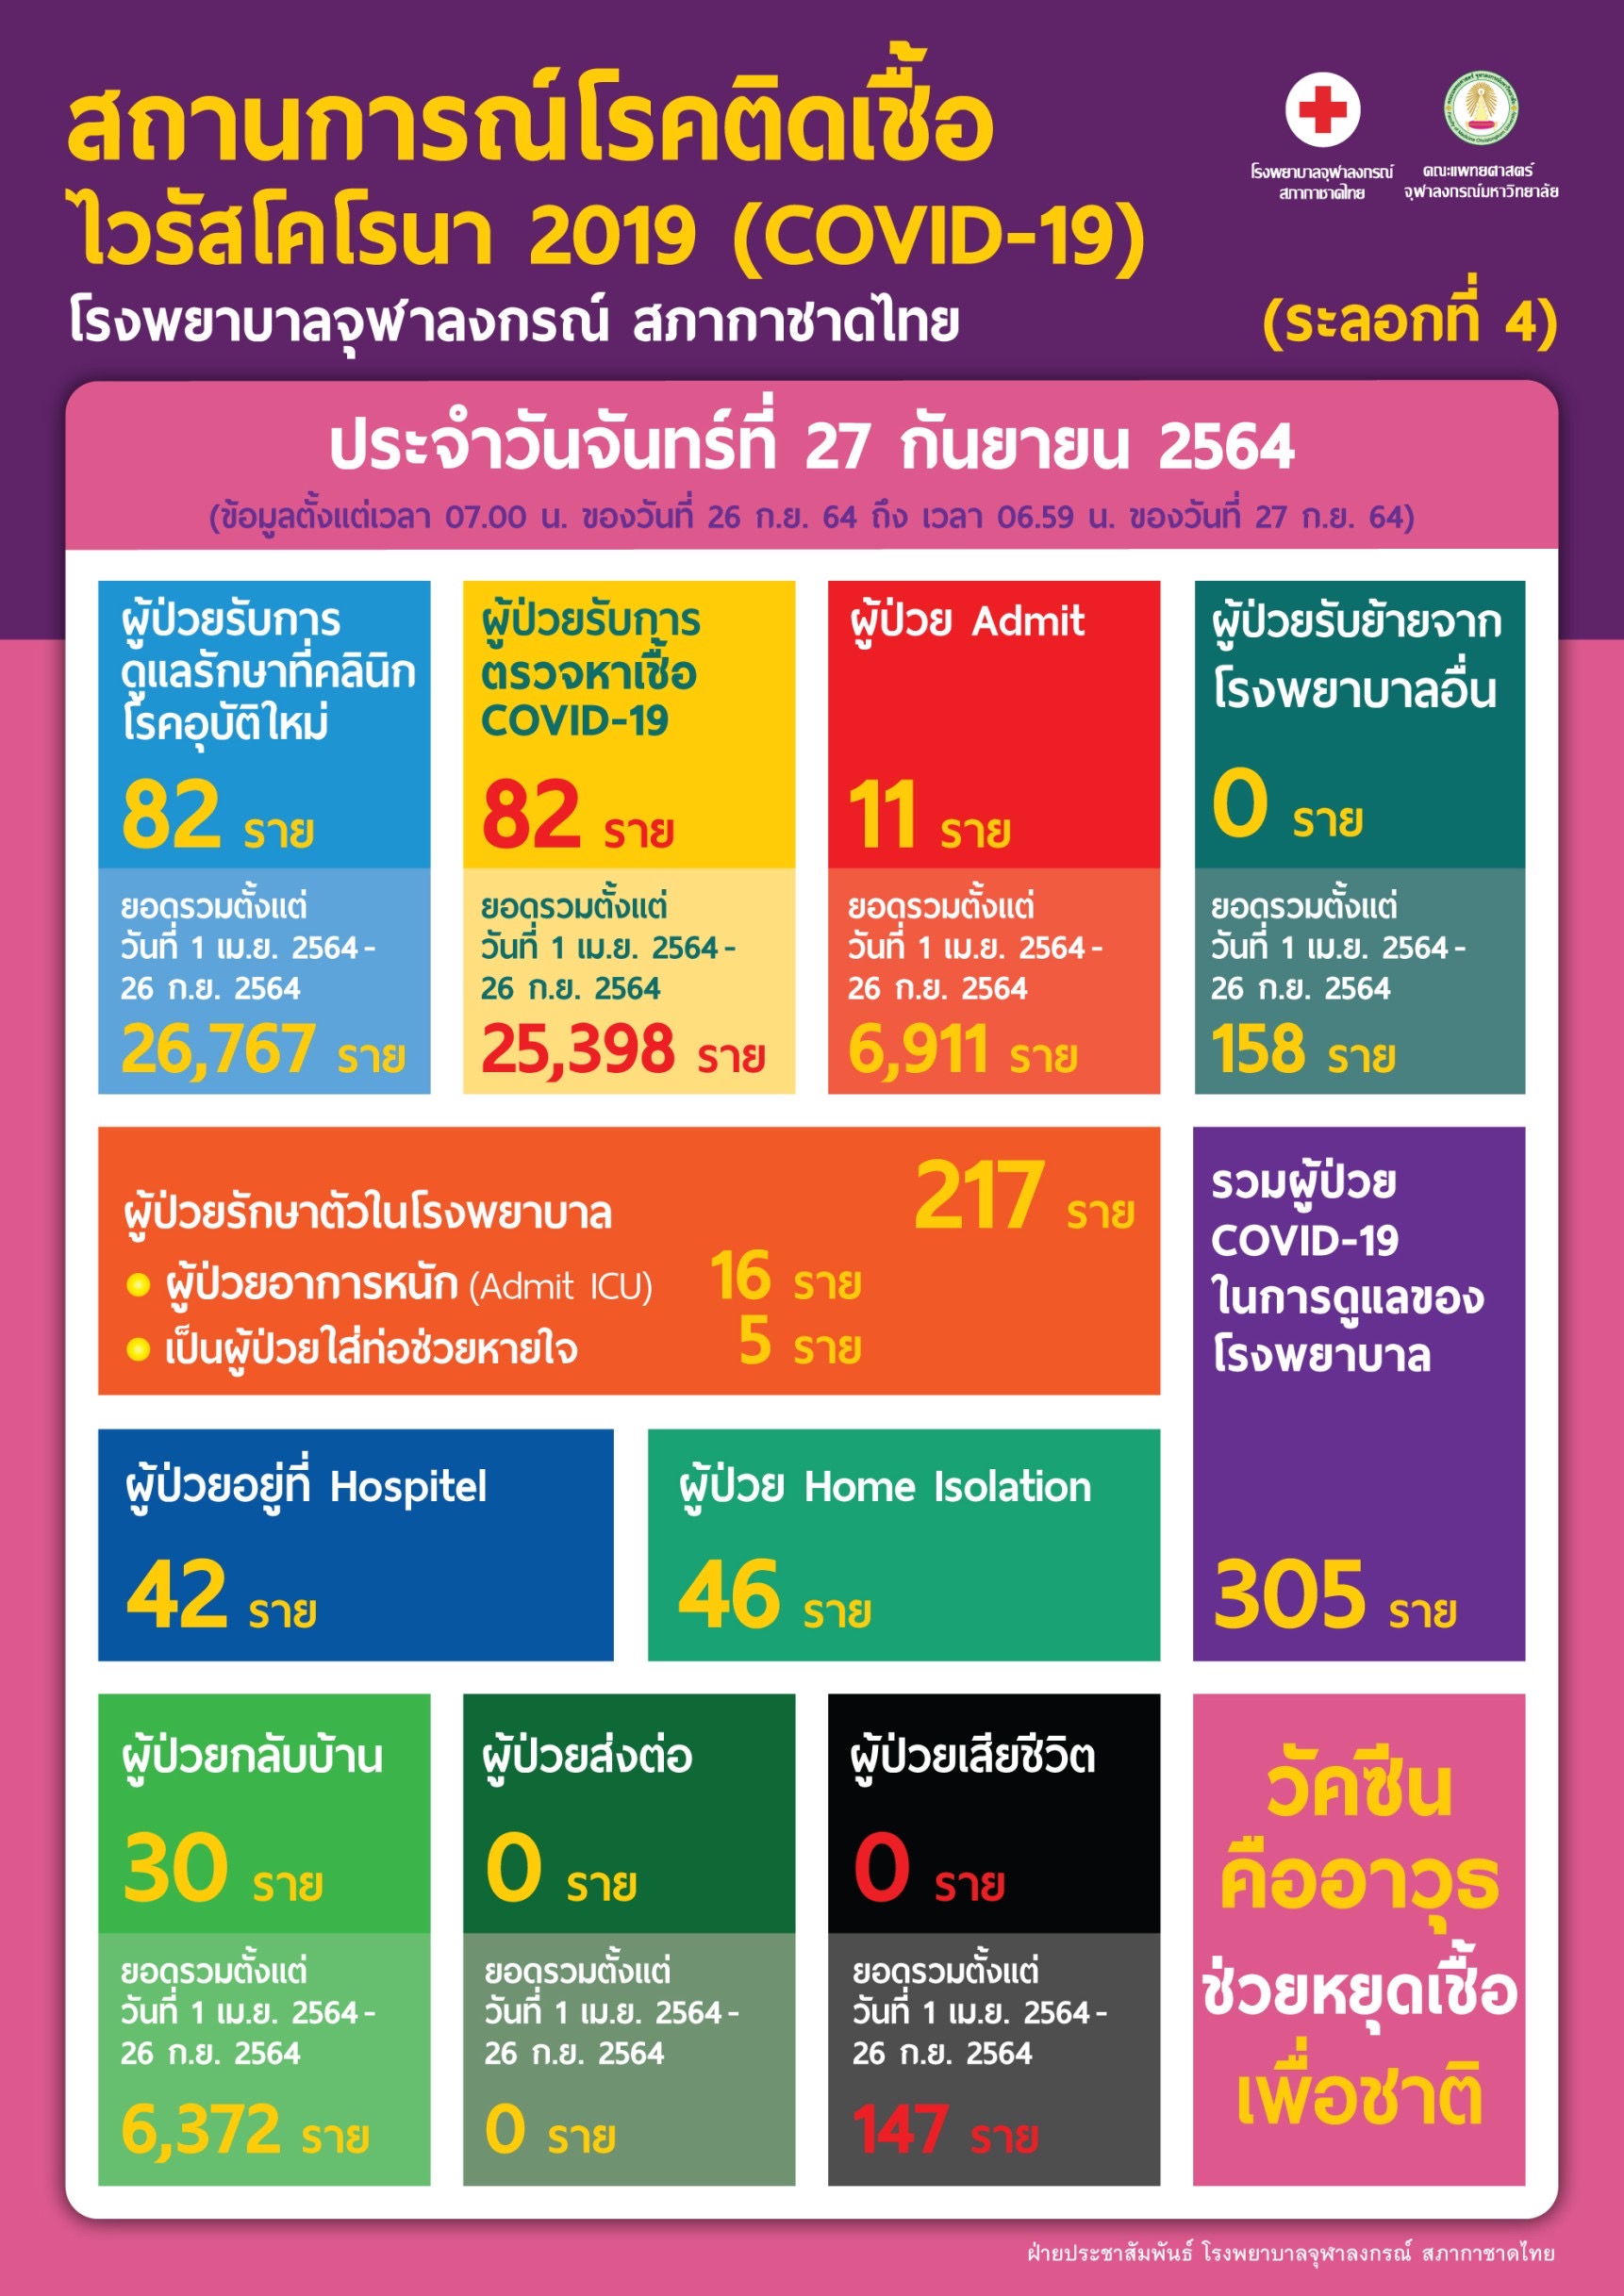 สถานการณ์โรคติดเชื้อไวรัสโคโรนา 2019 (COVID-19) (ระลอกที่ 4) โรงพยาบาลจุฬาลงกรณ์ สภากาชาดไทย ประจำวันจันทร์ที่ 27 กันยายน 2564